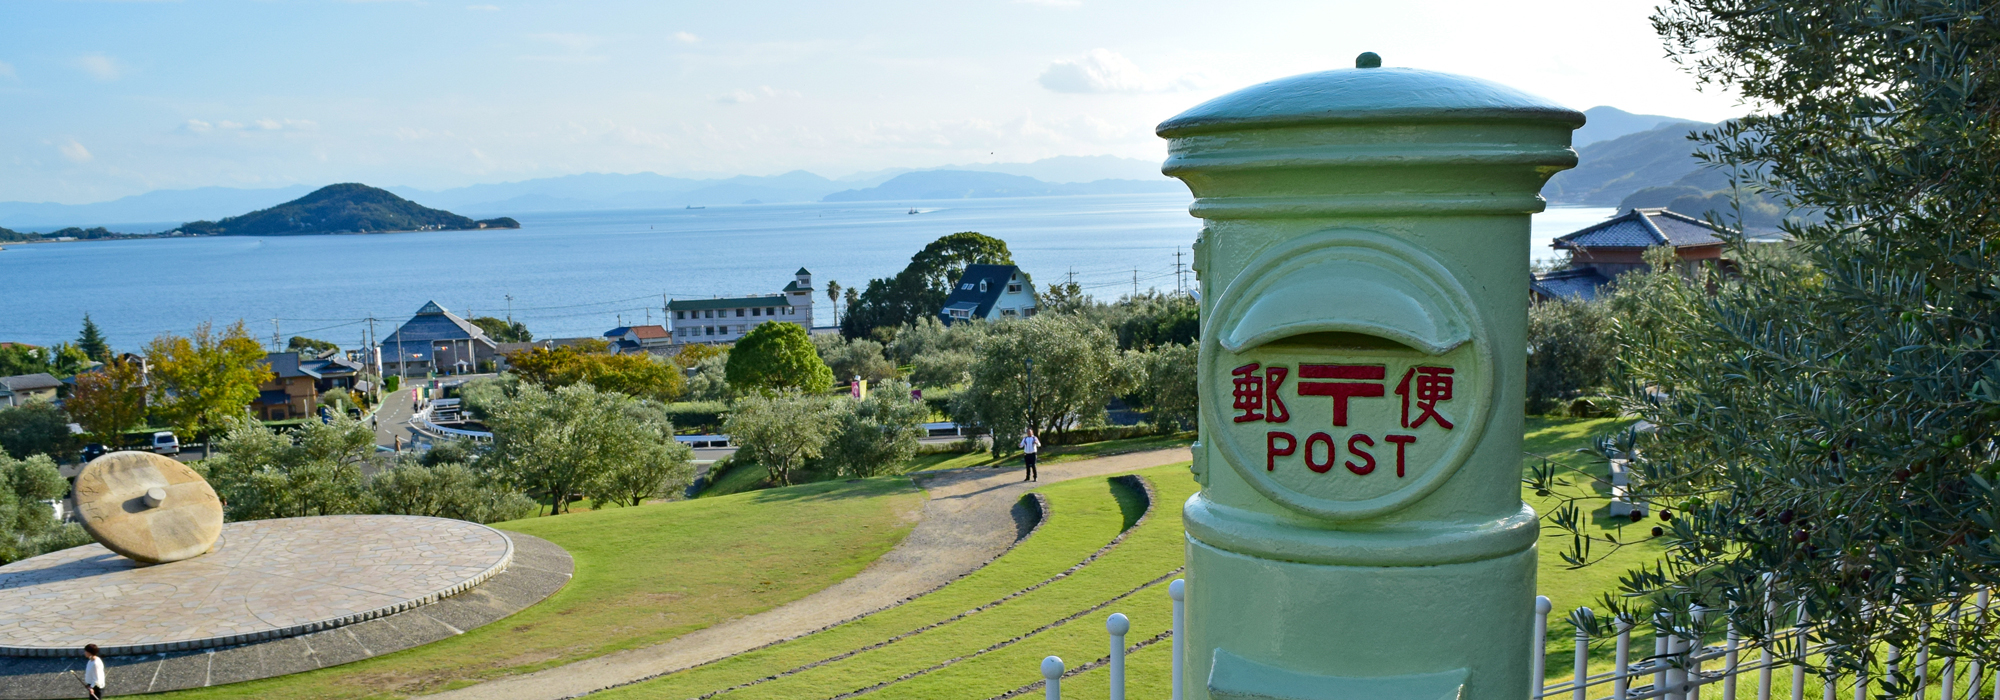 瀬戸内海の離島・香川県小豆島旅行におすすめの海沿いホテル、宿、コテージから小豆島観光で小豆島オリーブ公園をしよう